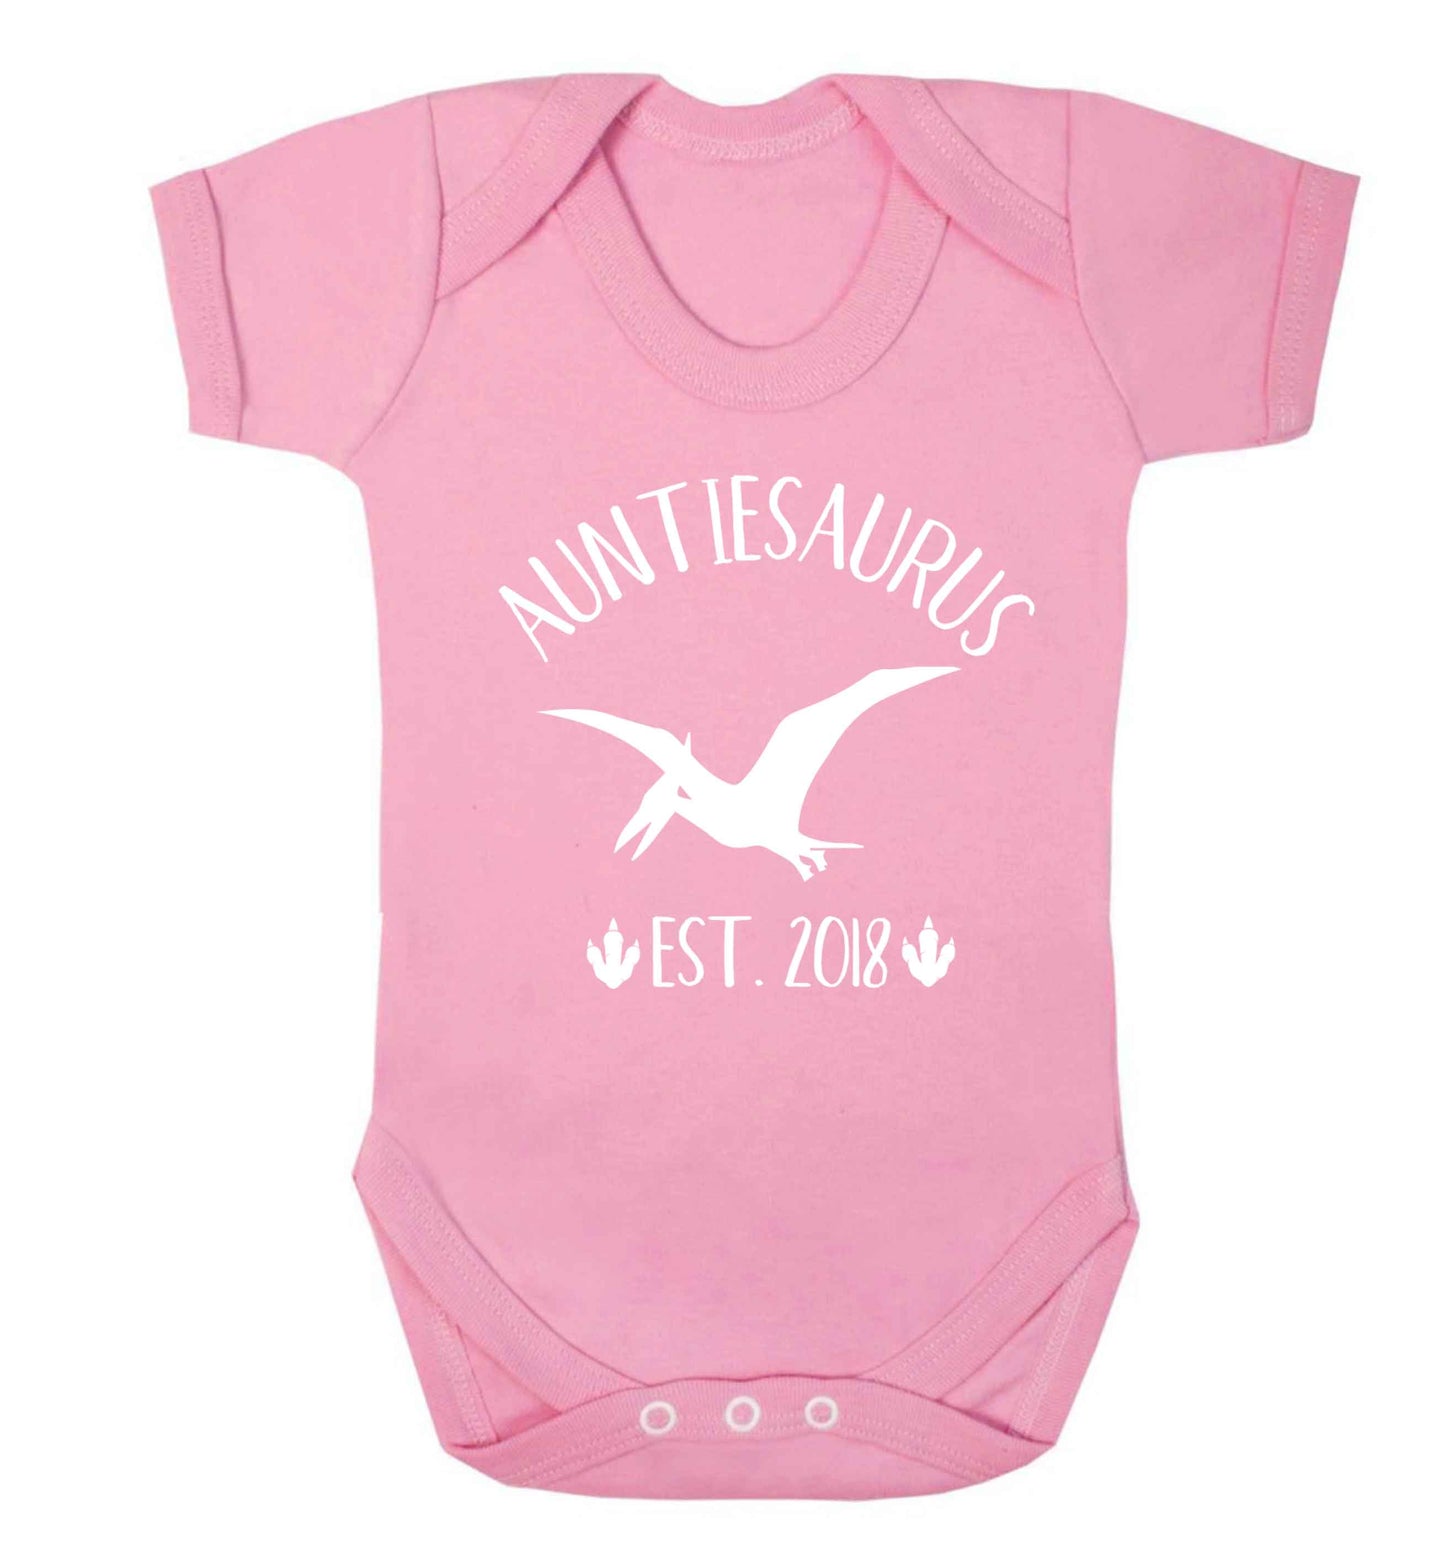 Personalised auntiesaurus since (custom date) Baby Vest pale pink 18-24 months